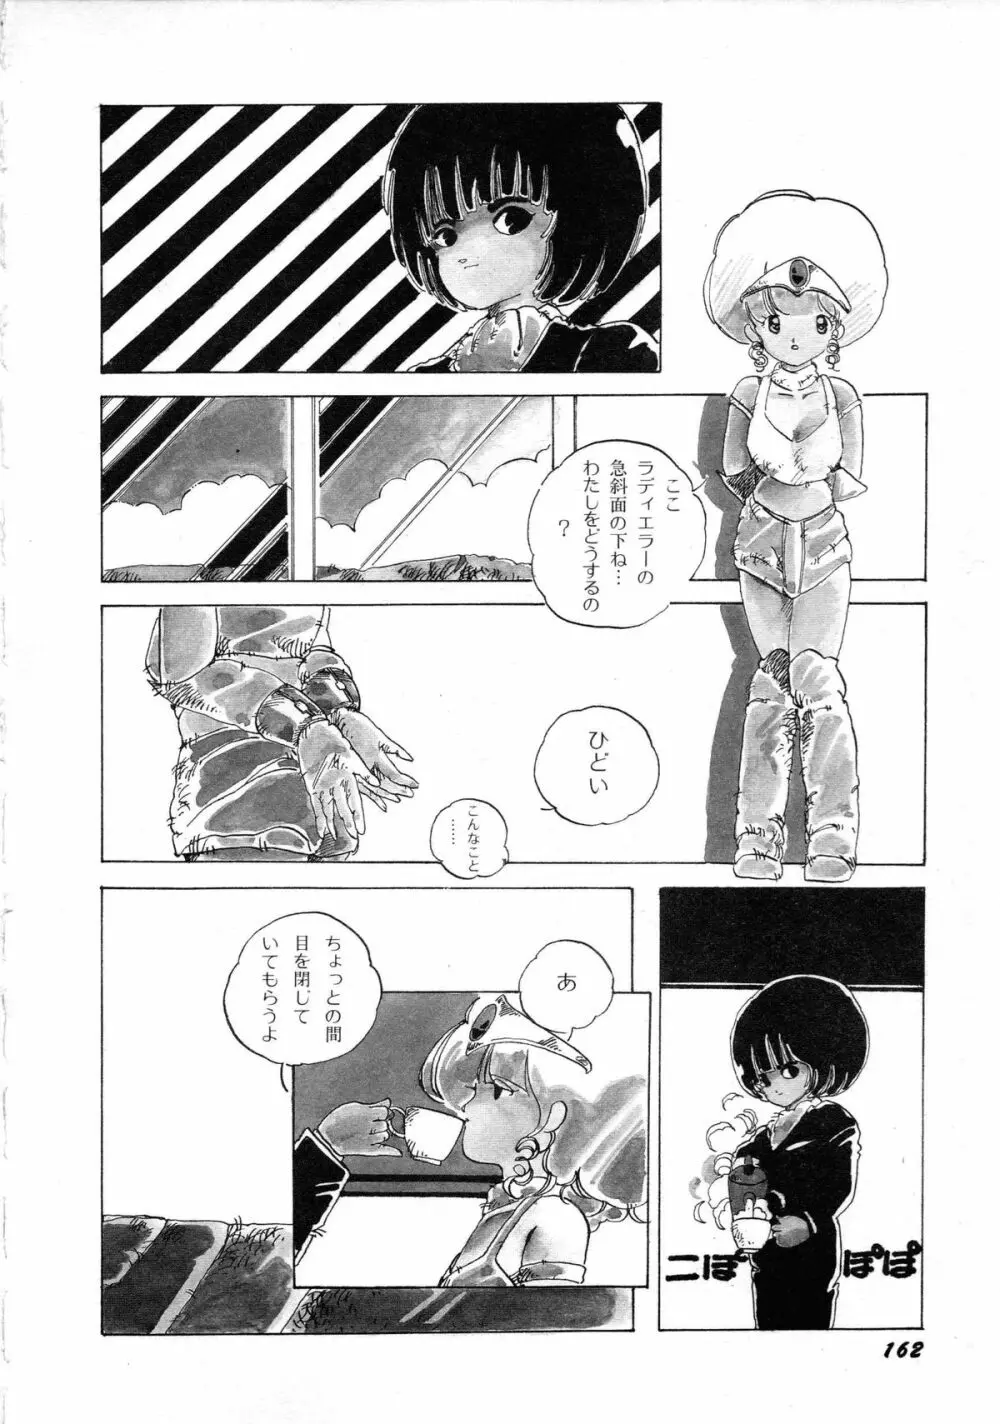 ロボット&美少女傑作選 レモン・ピープル1982-1986 166ページ